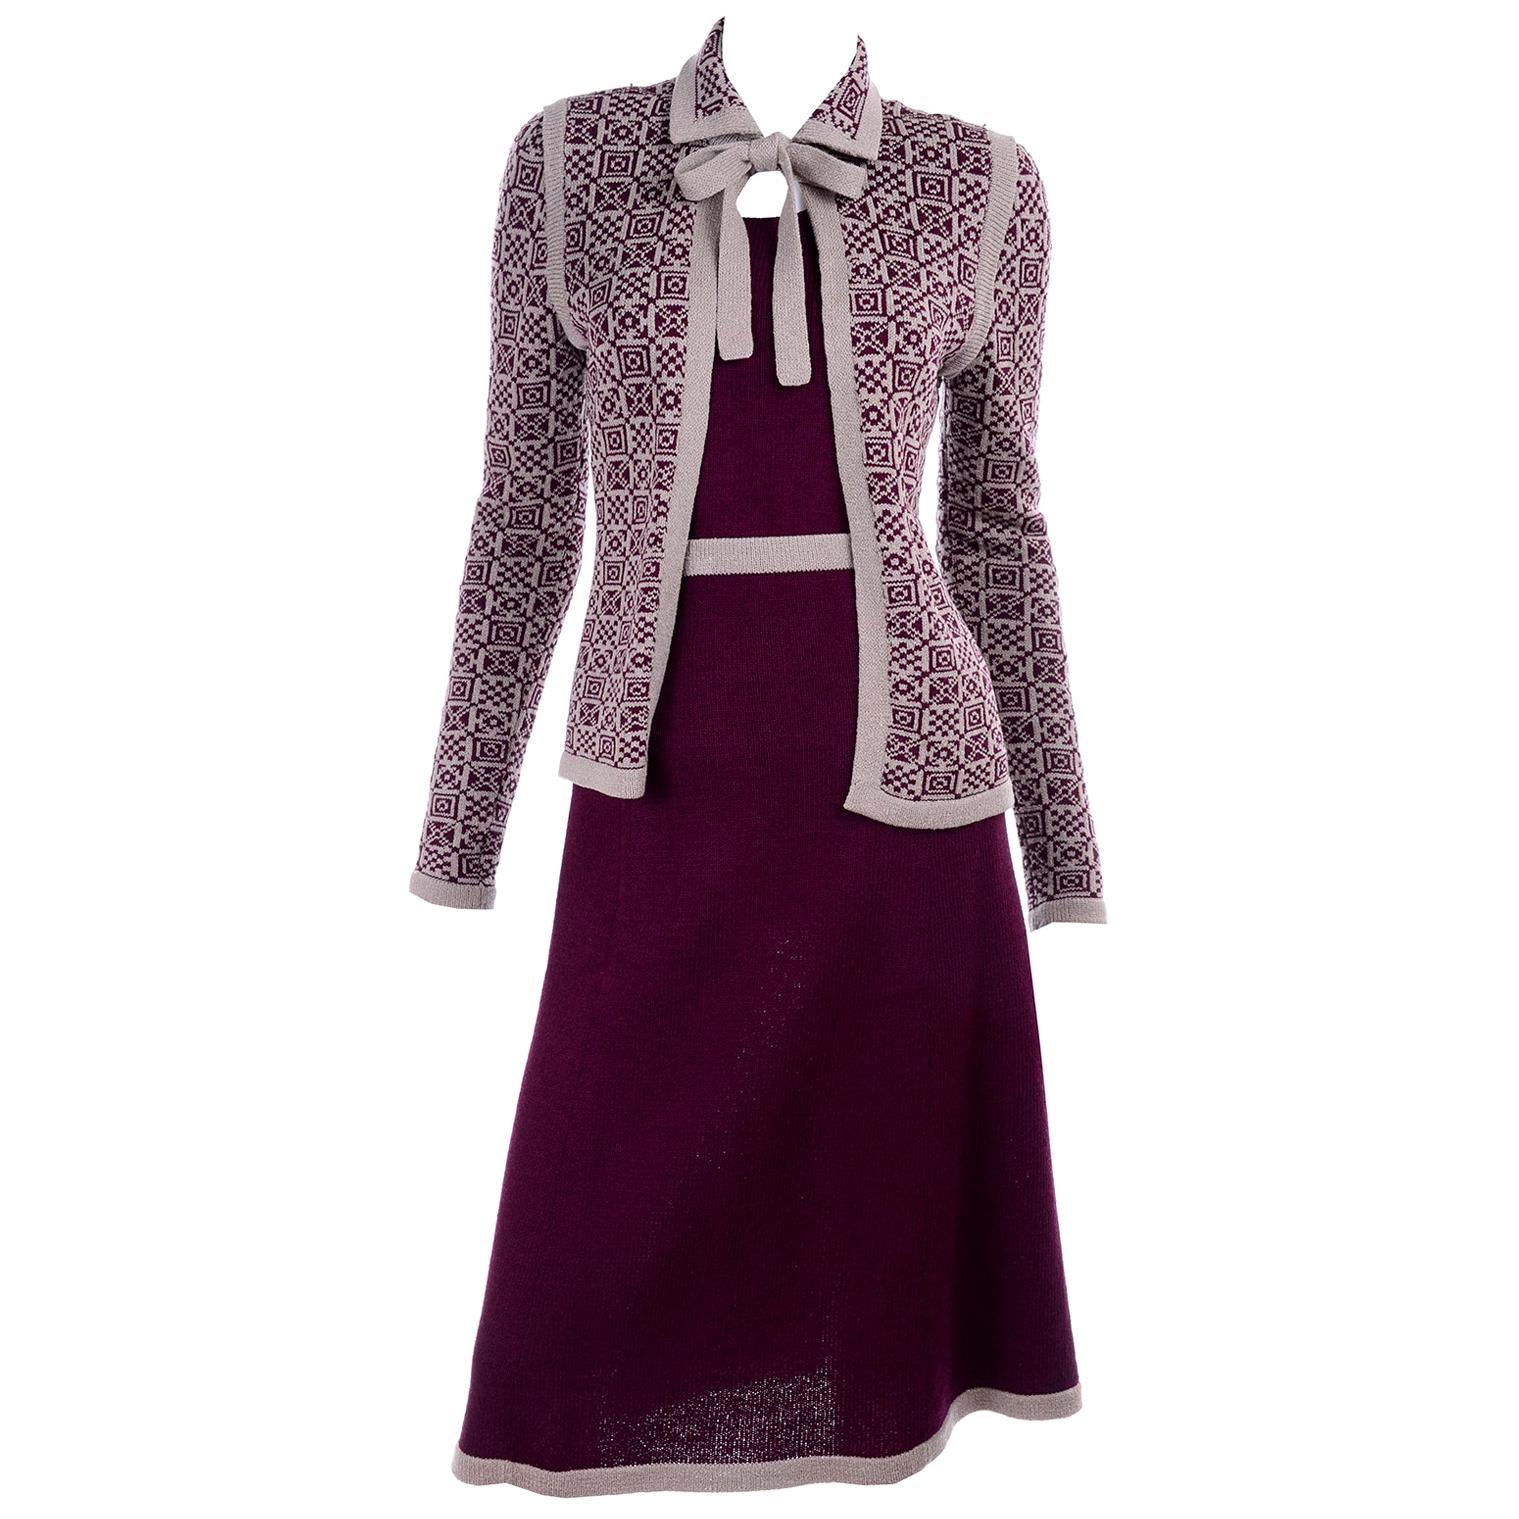 1970s Adolfo Suit 2 pc Skirt & Tank Dress W Bow Cardigan Jacket in Burgundy Knit